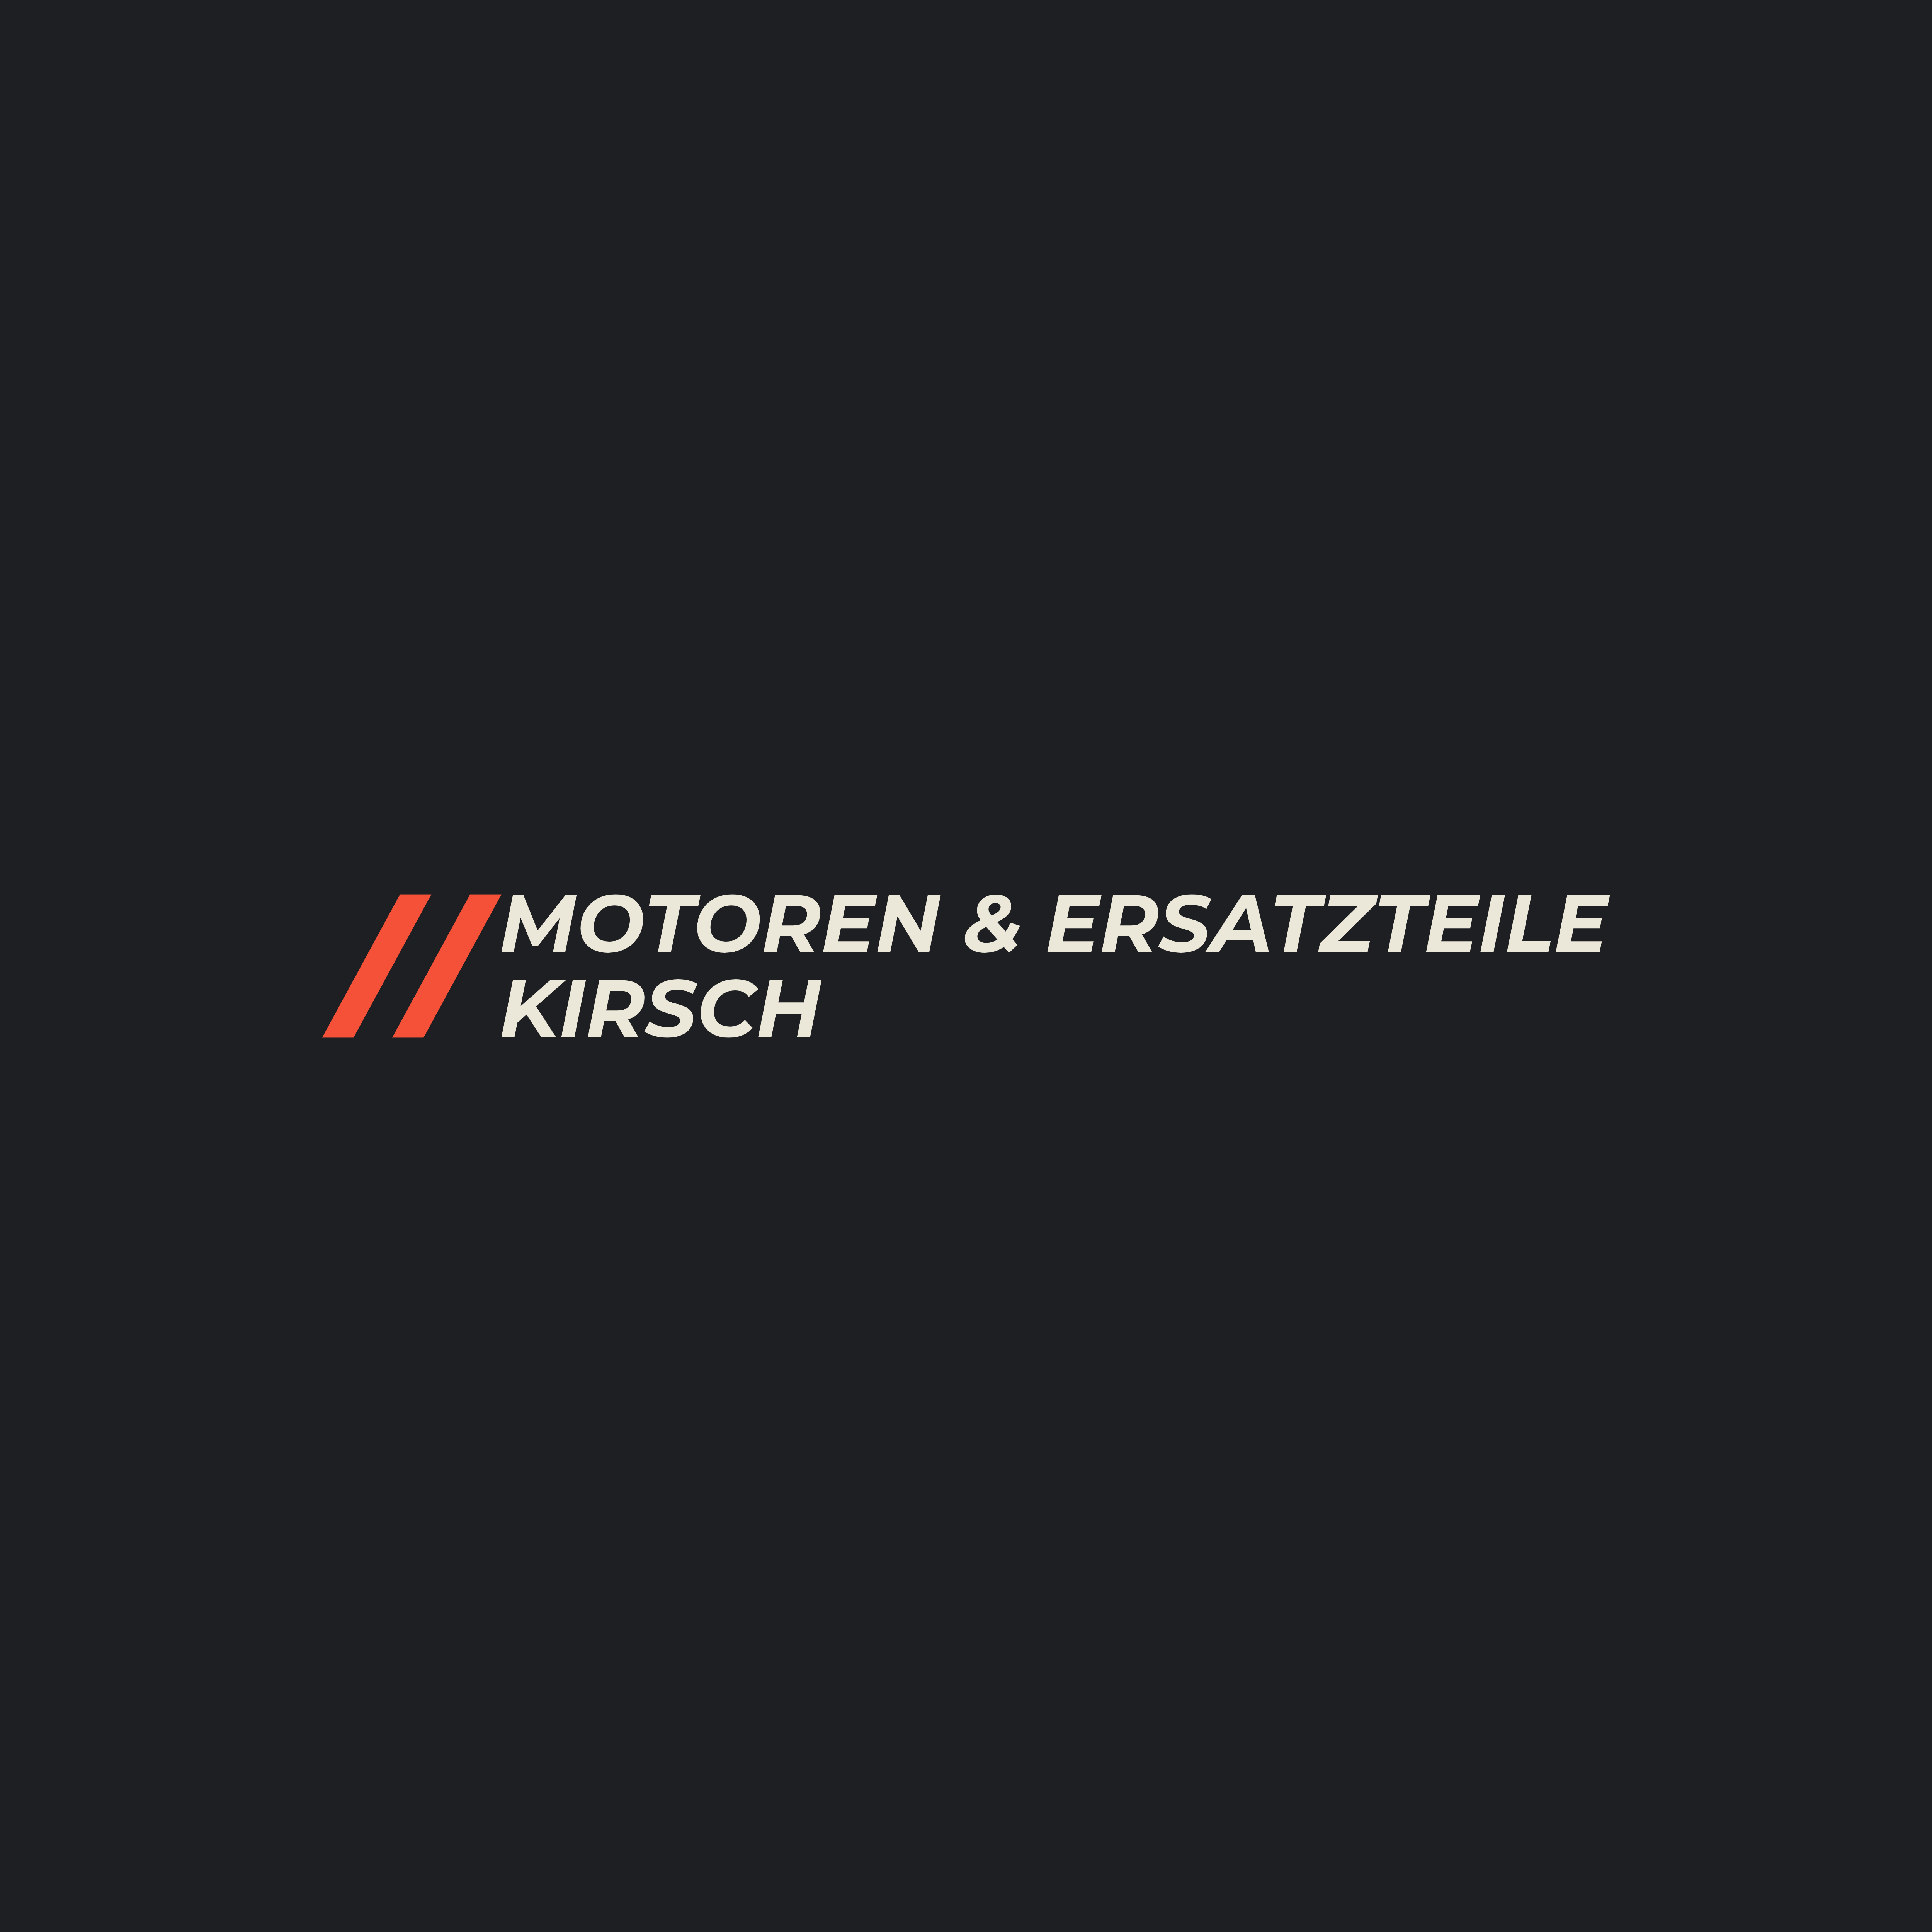 Motoren & Ersatzteile Kirsch logo